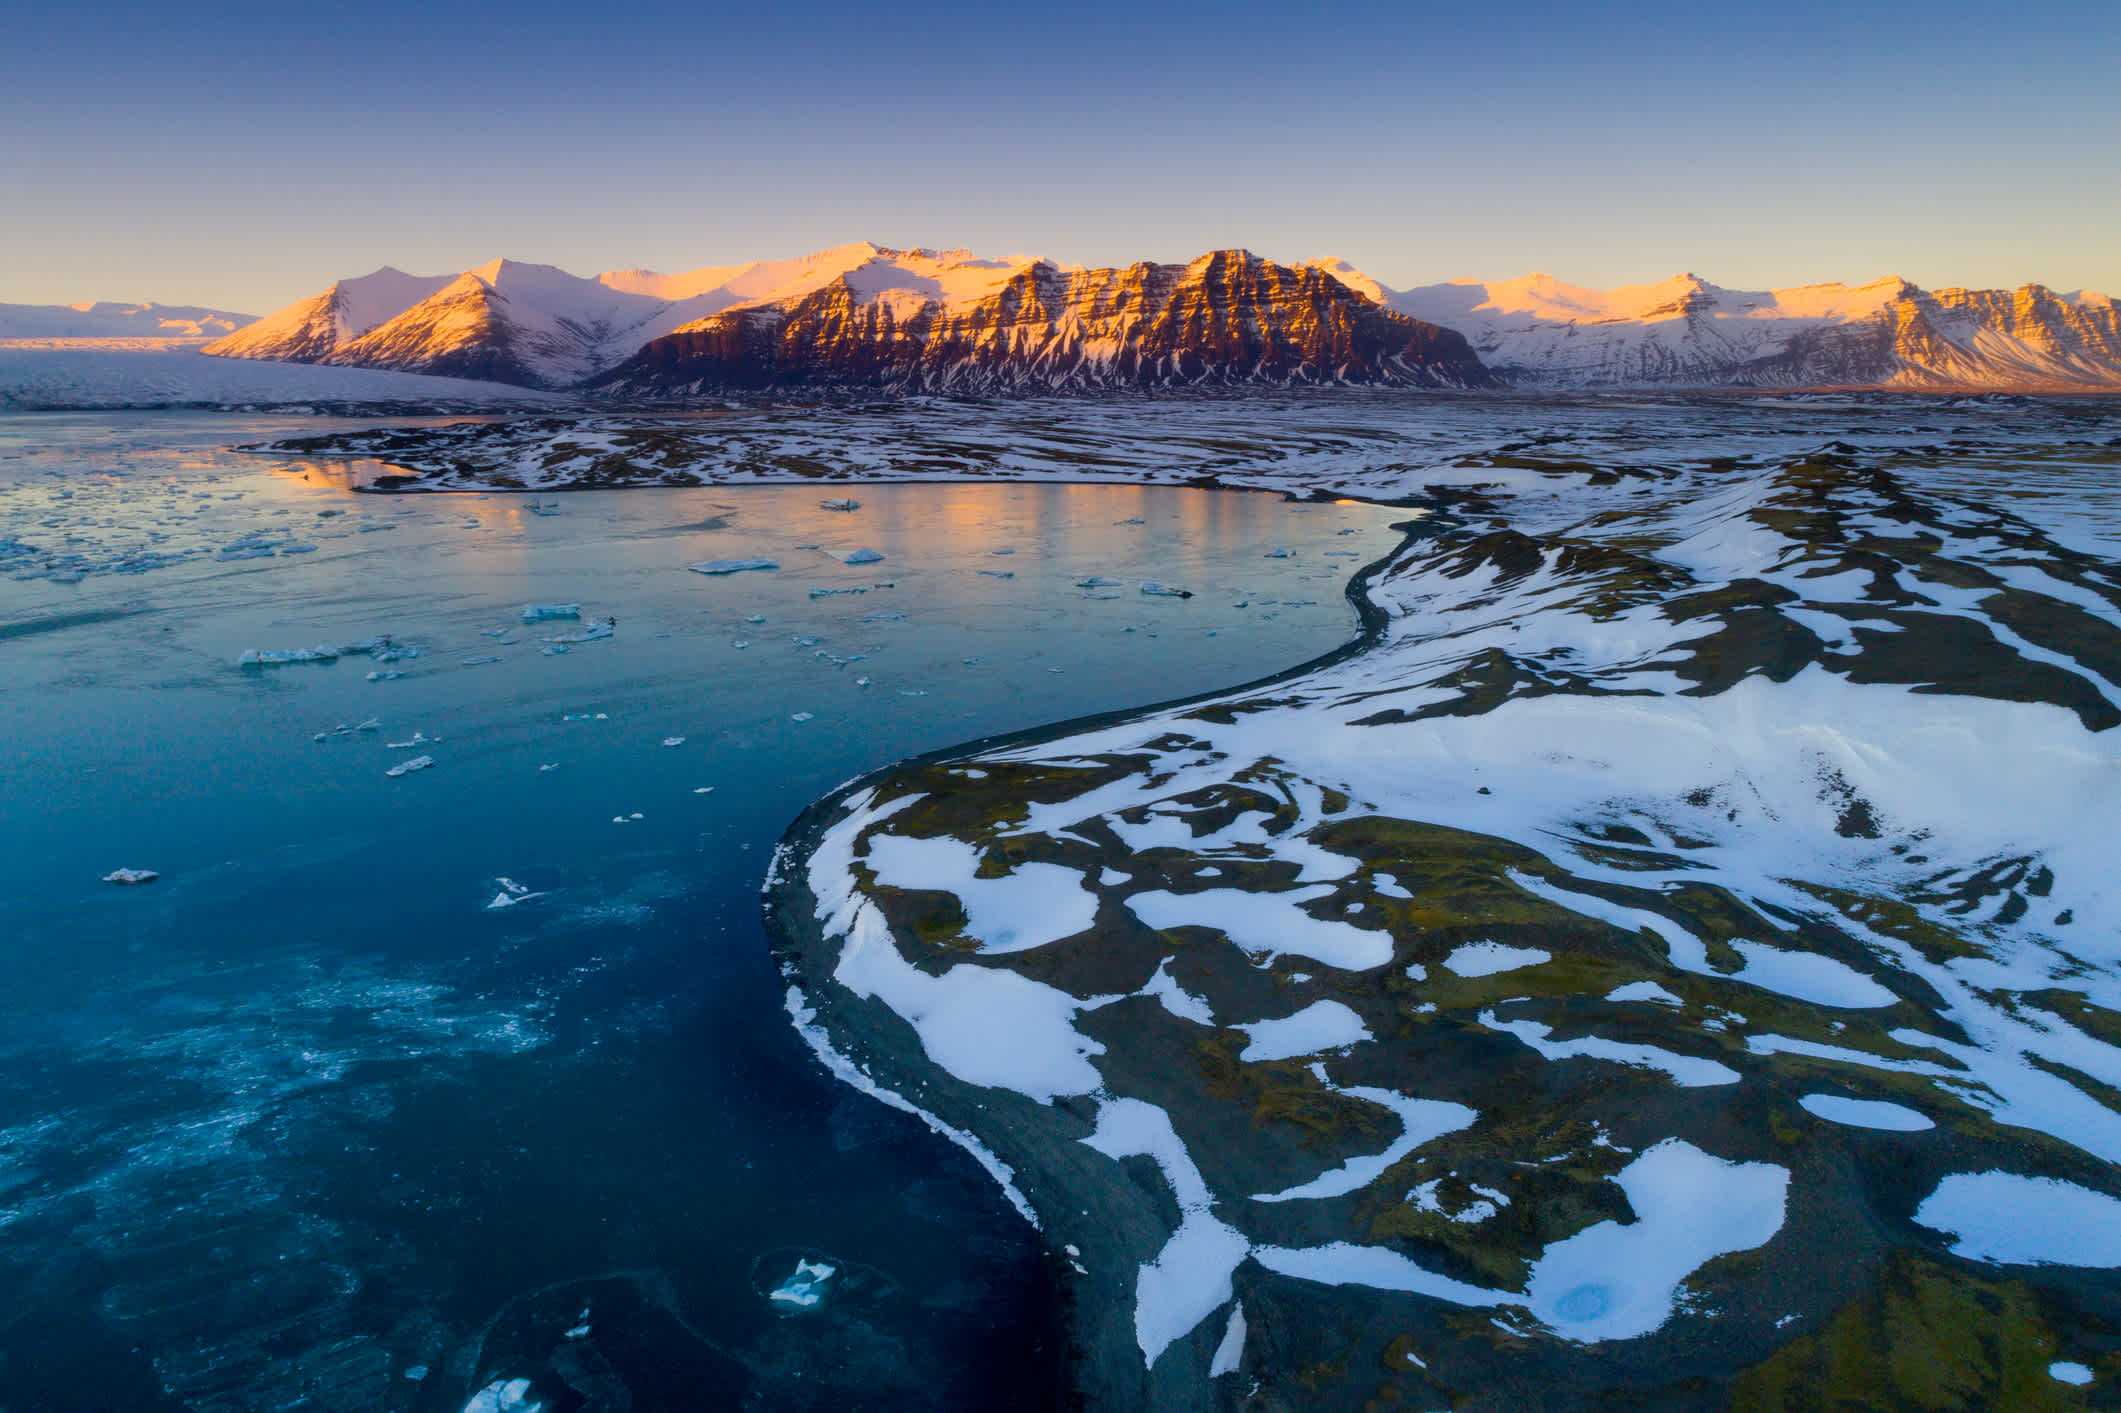 Warme Farben des Sonnenuntergangs über der Gletscherlagune Jökulsarlon in Island